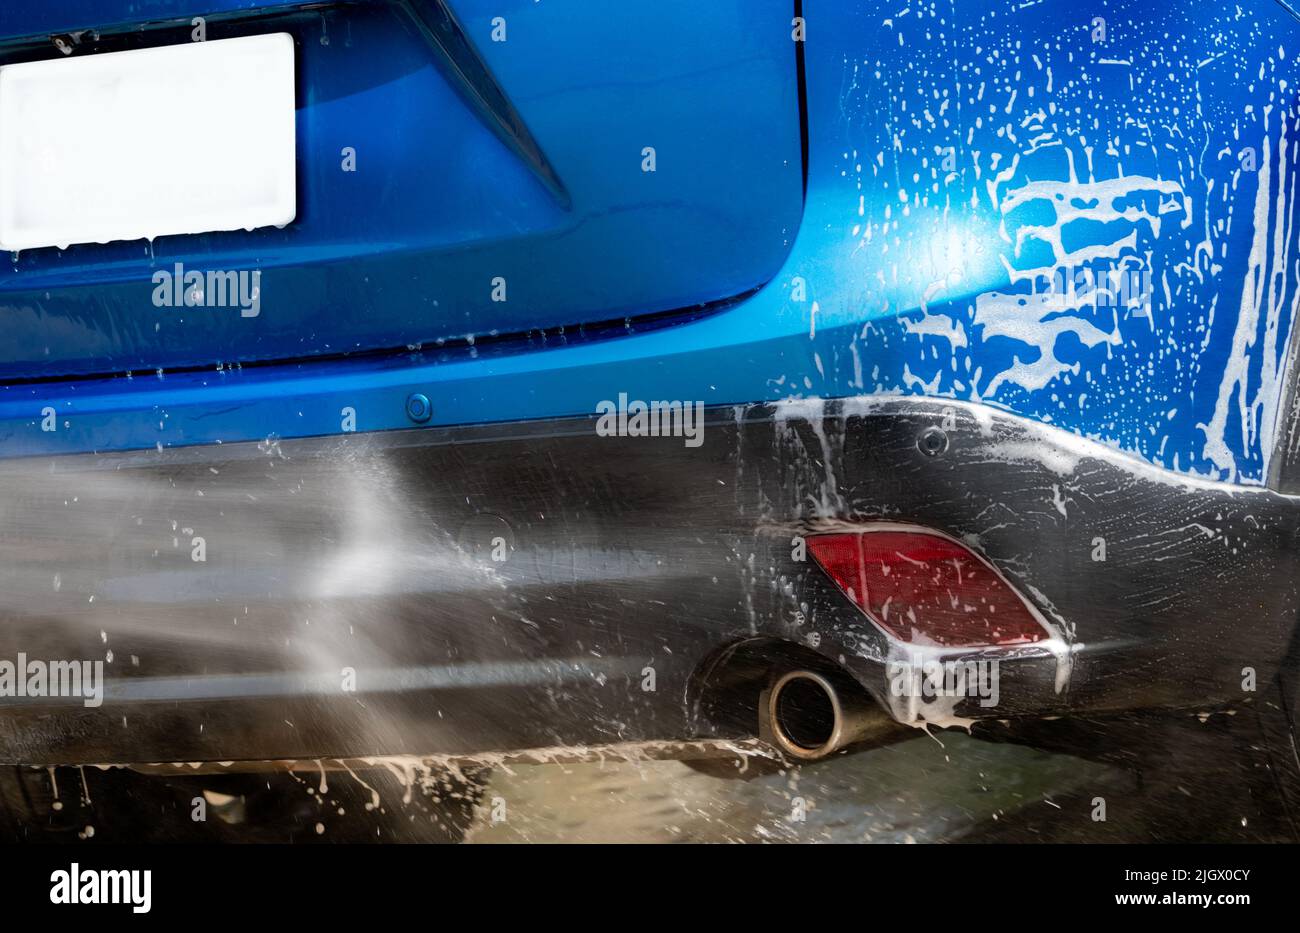 Limpieza del coche con agua pulverizada a alta presión. Lavado de coches azul con espuma de jabón blanco. Negocio del cuidado del automóvil. Primer plano de la limpieza y el brillo del coche antes de encerar Foto de stock